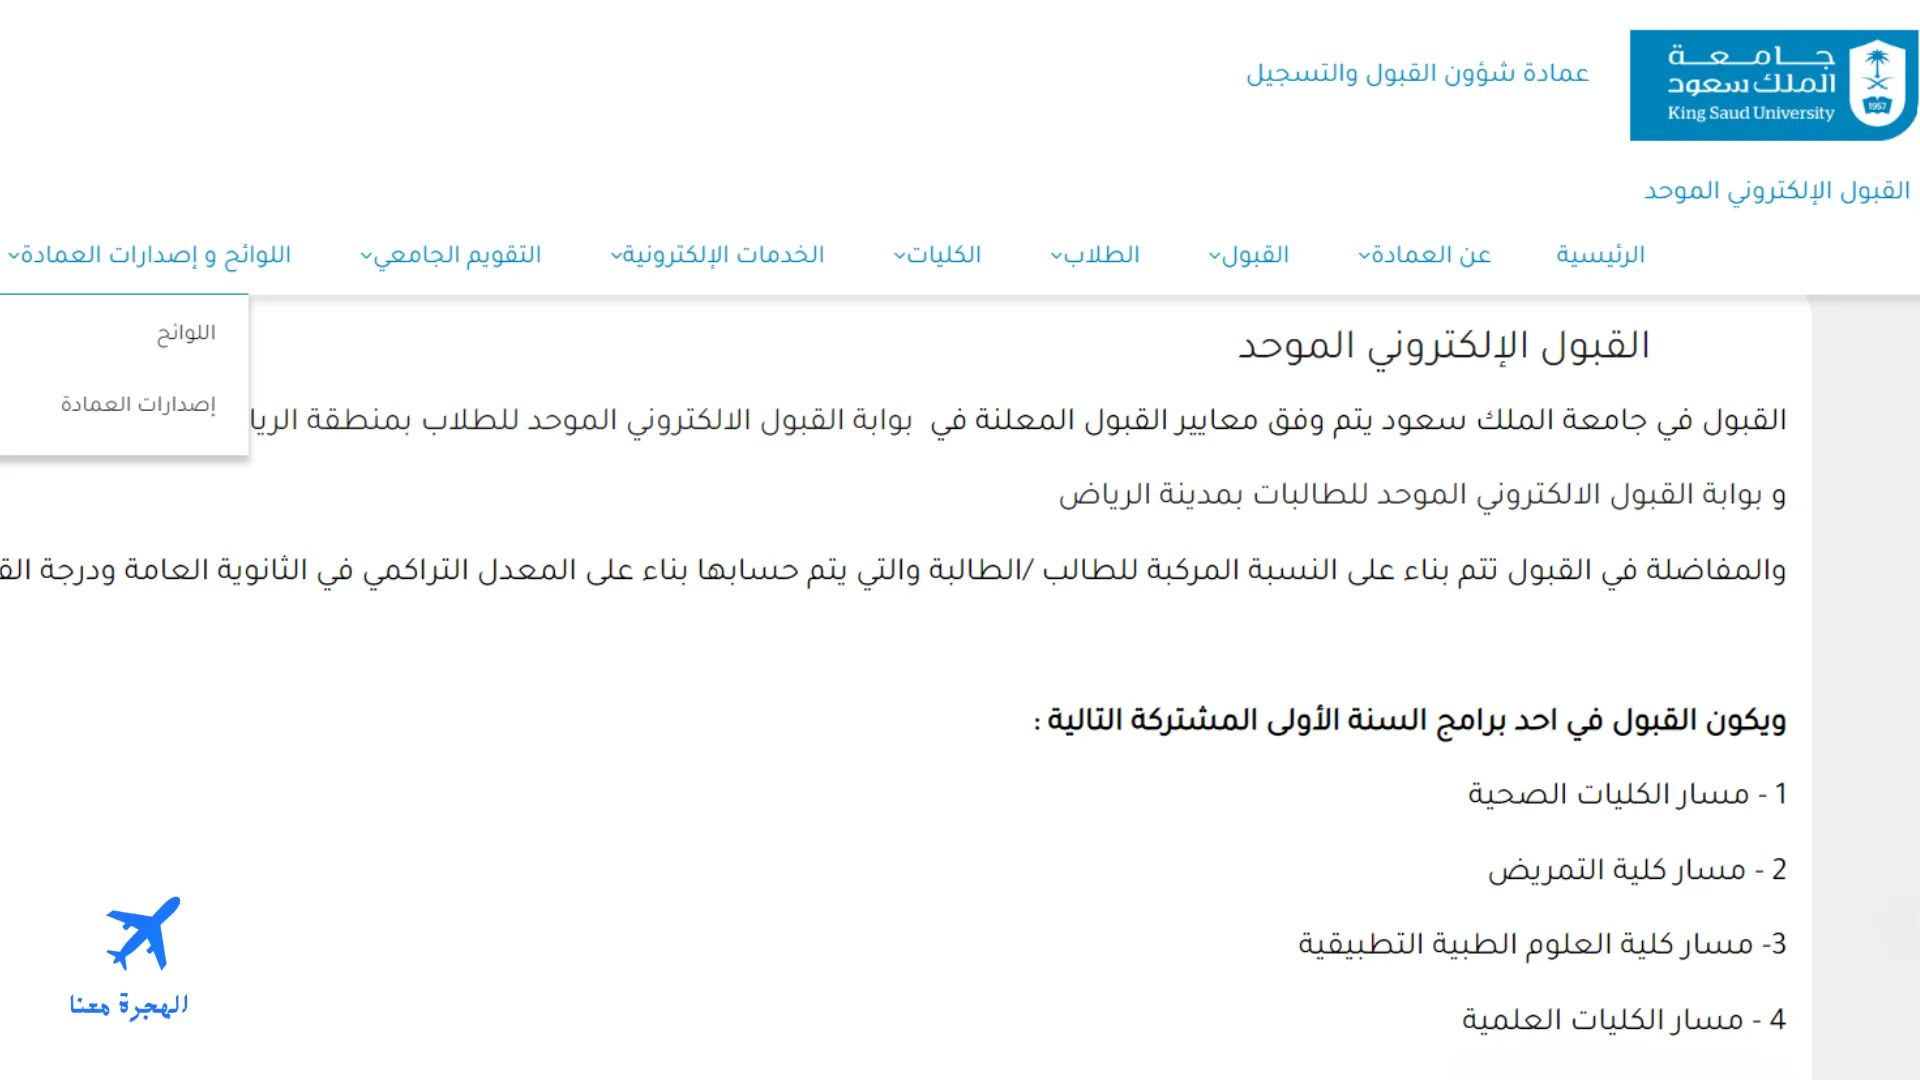 صورة من الموقع الإلكتروني الذي من خلاله يتم تقديم طلب الالتحاق بدبلوم تمريض جامعة الملك سعود